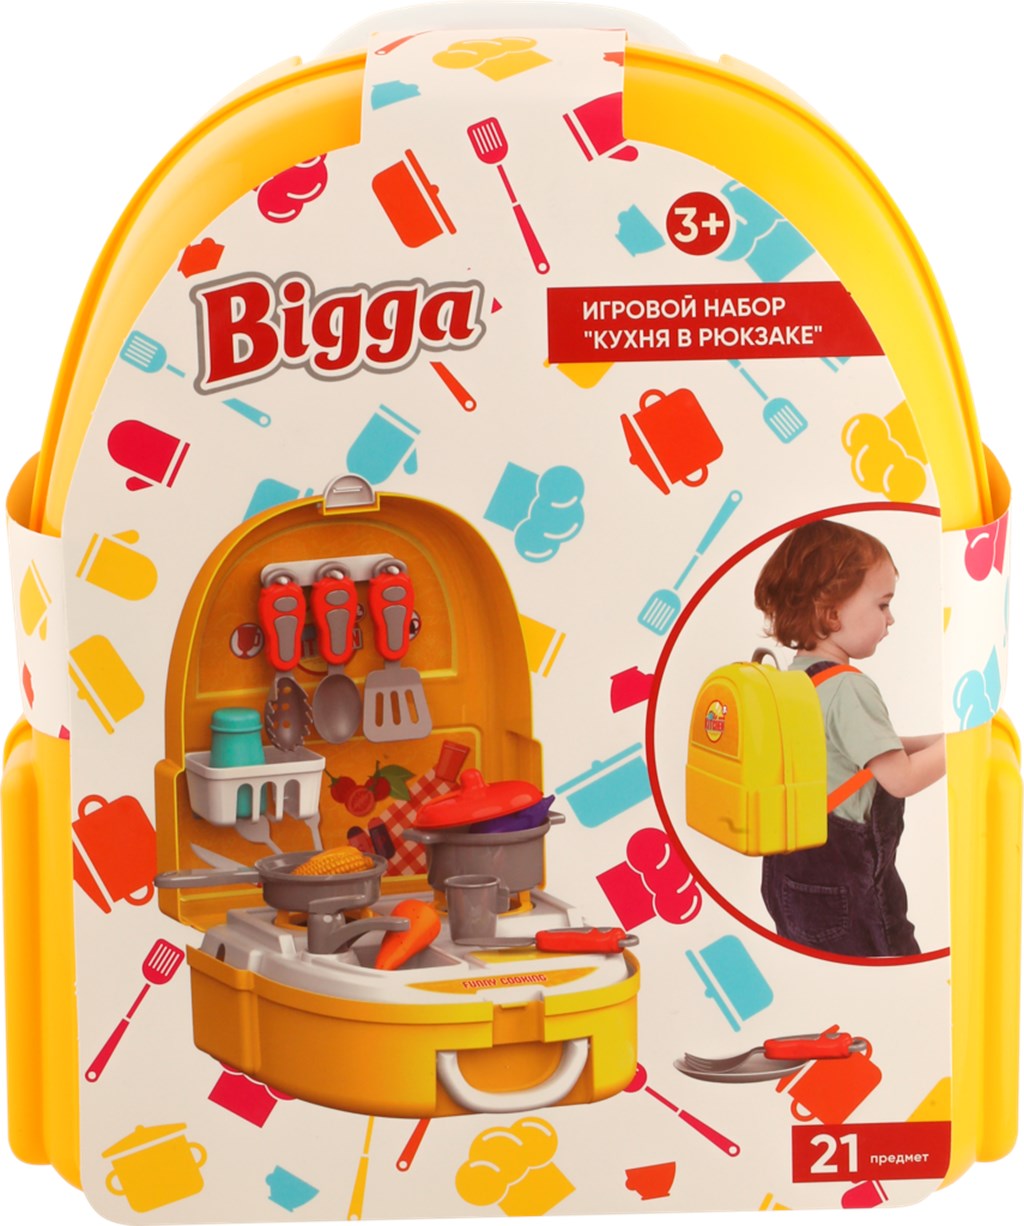 фото Игровой набор кухня в рюкзаке bigga